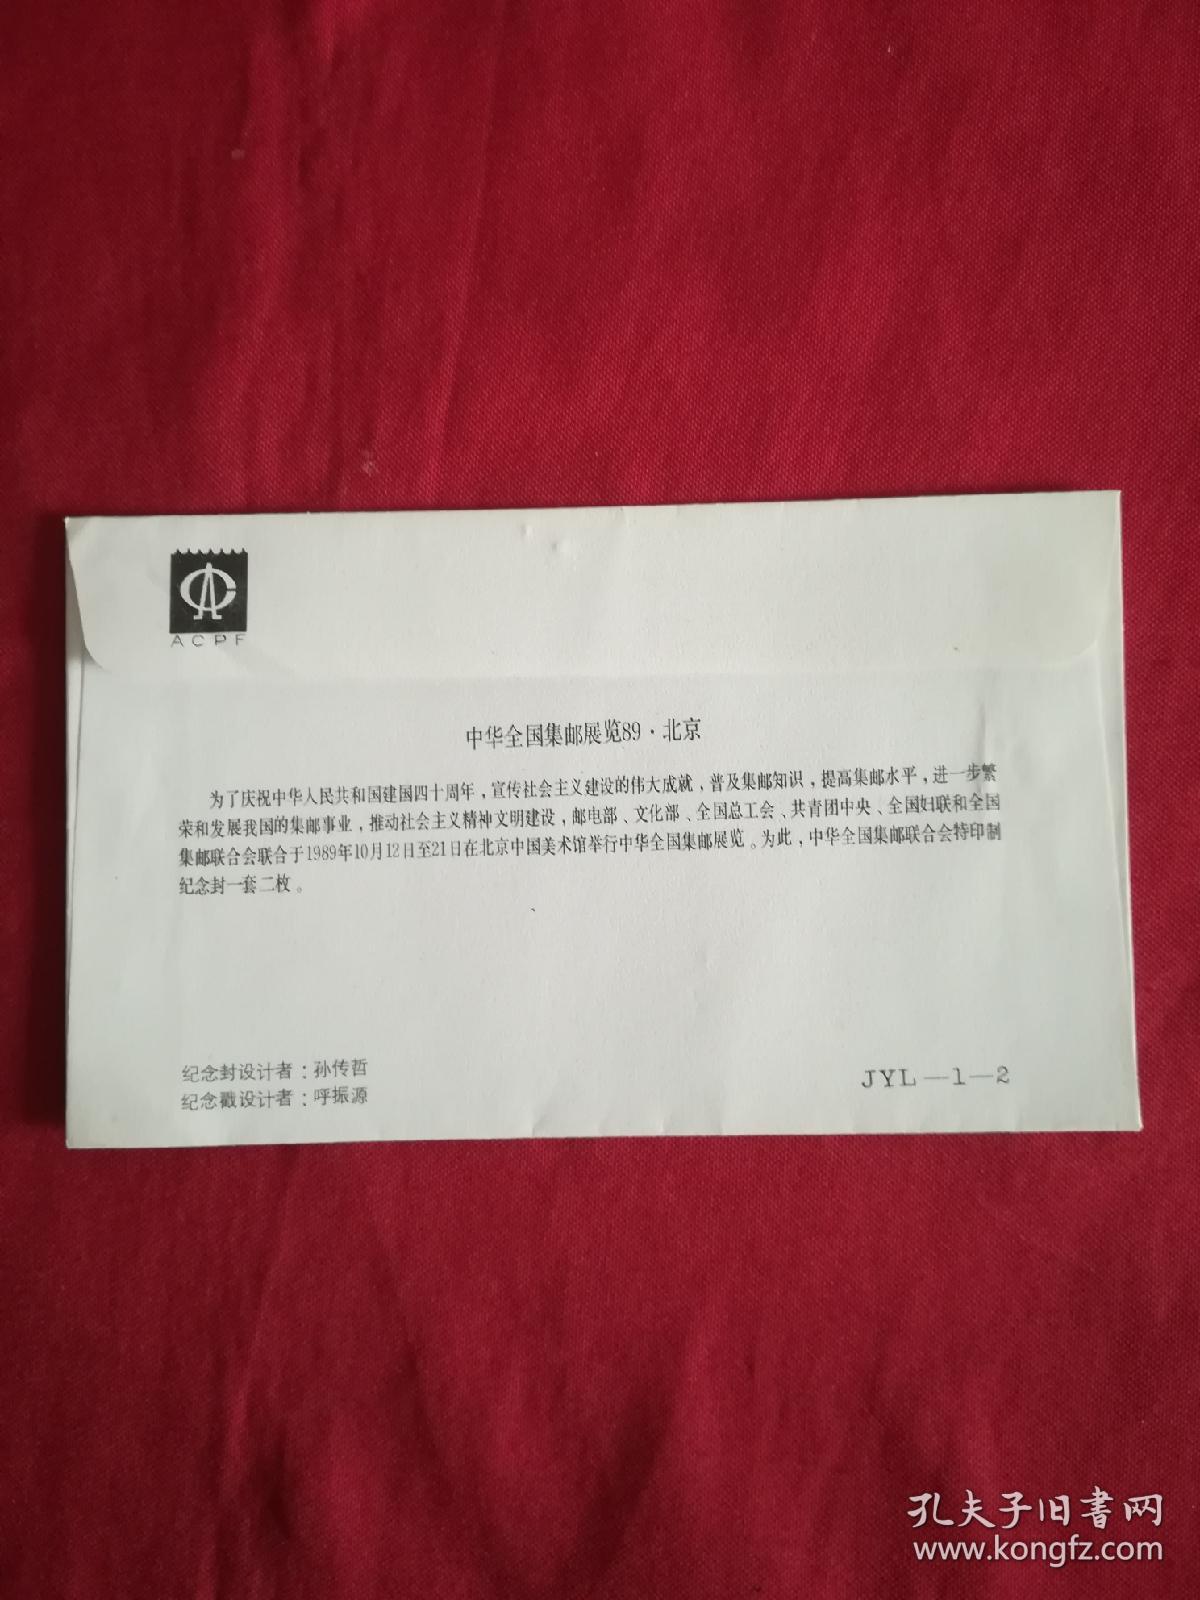 纪念封:中华全国集邮展览89北京纪念